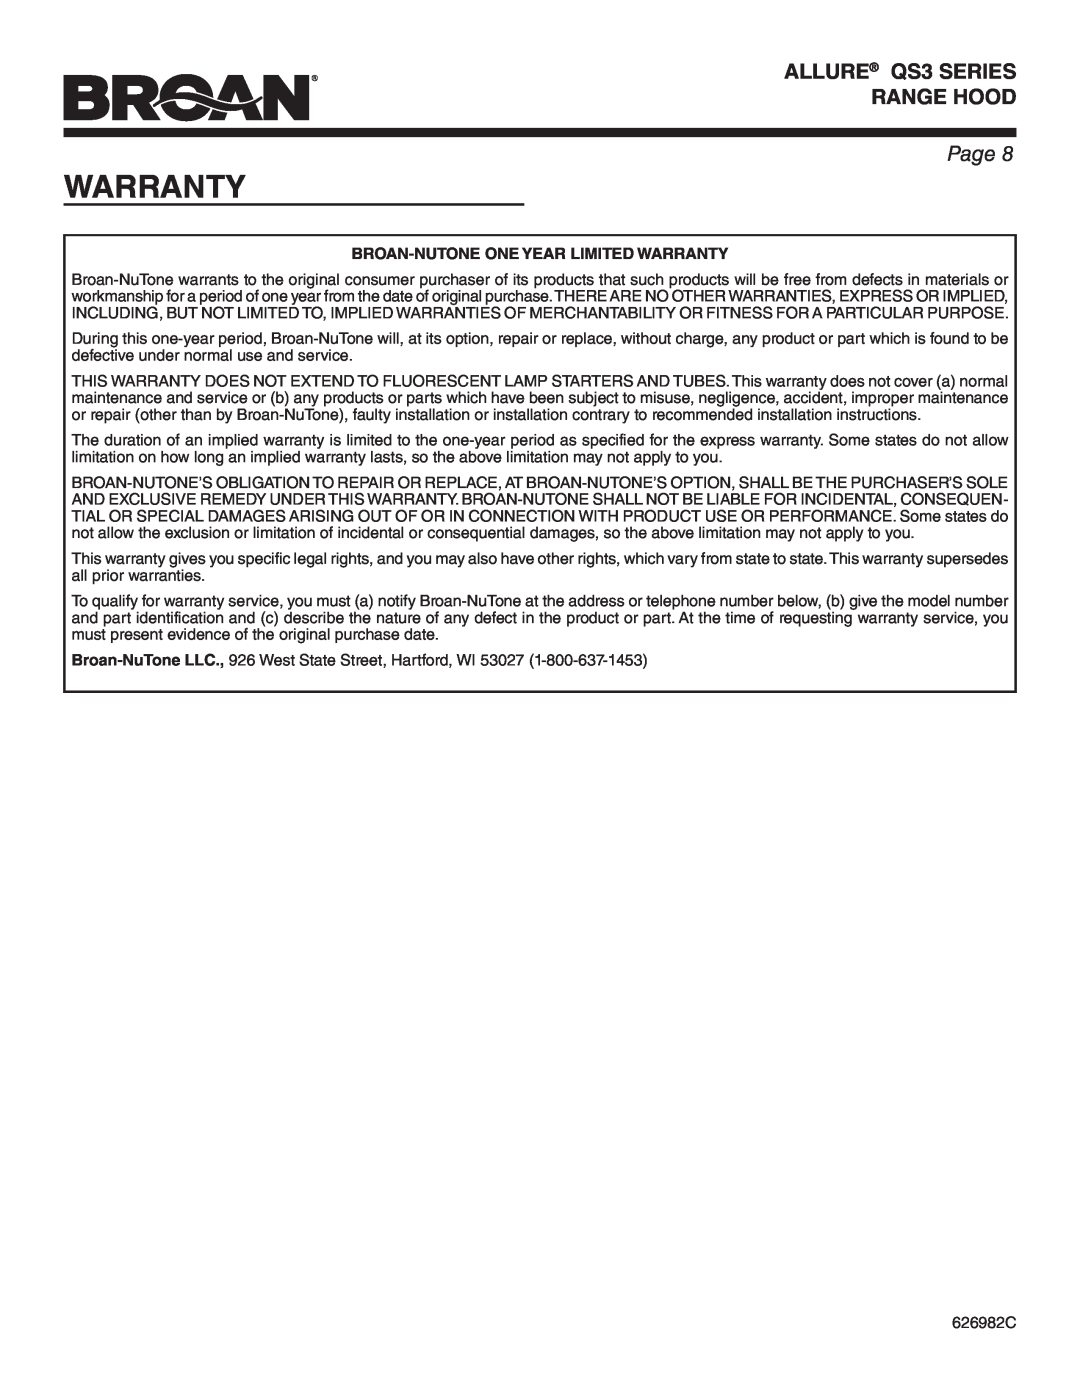 Broan QS342SS warranty Broan-Nutone One Year Limited Warranty, ALLURE QS3 SERIES RANGE HOOD, Page 